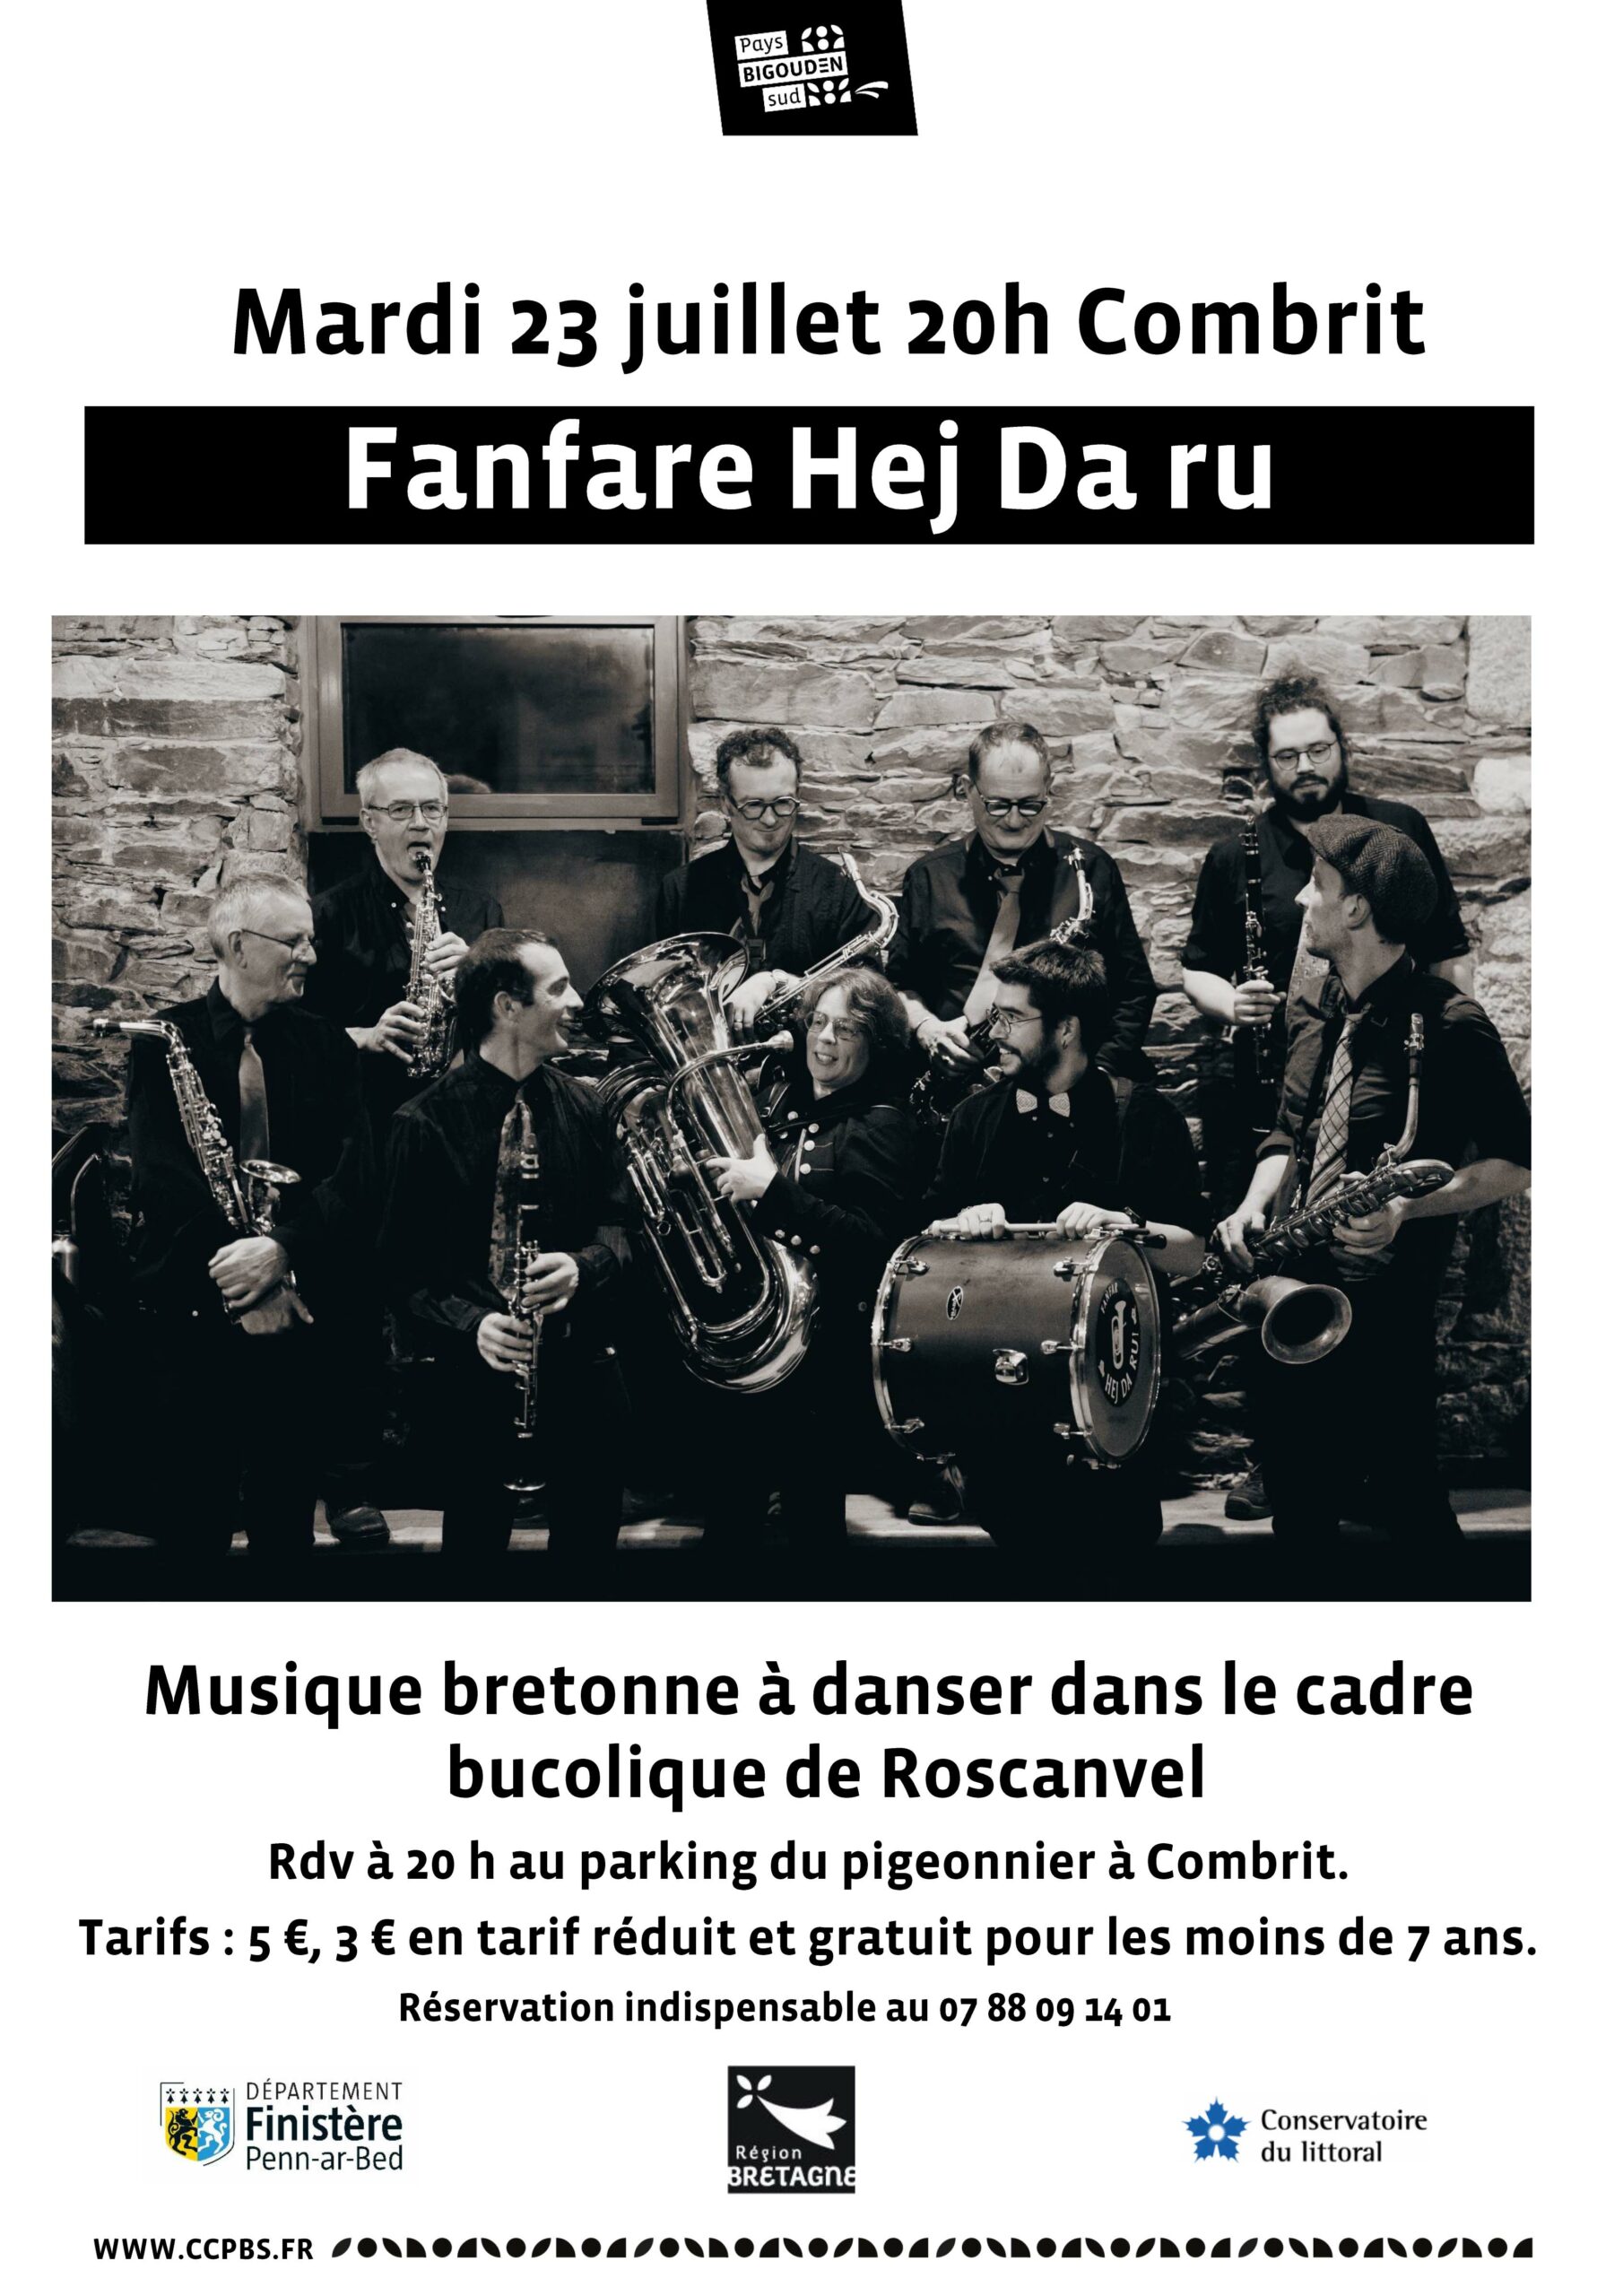 Musique bretonne à danser avec la Fanfare Hej Da Ru